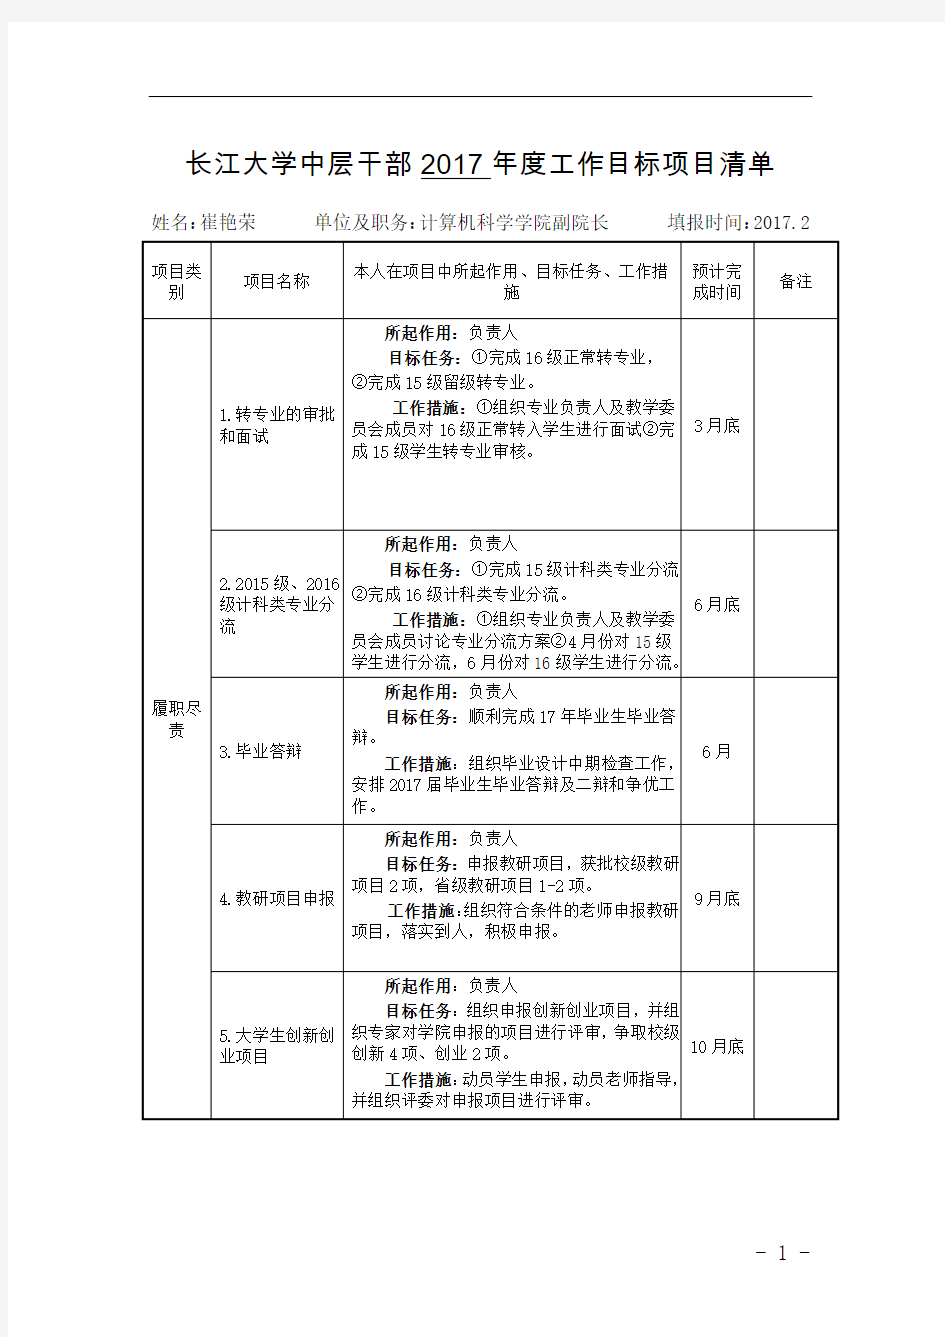 长江大学中层干部2017年度工作目标项目清单